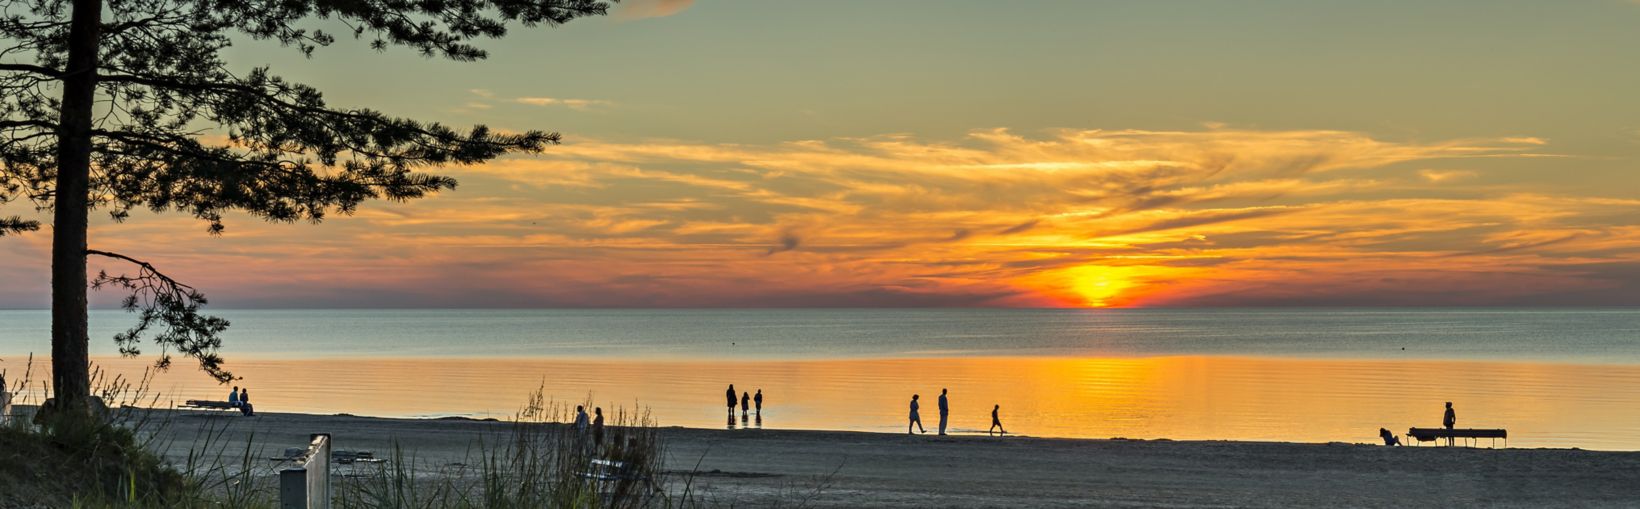 Coucher de soleil coloré sur la plage de sable de Jurmala - la célèbre station balnéaire de la région de la Baltique, lettonie